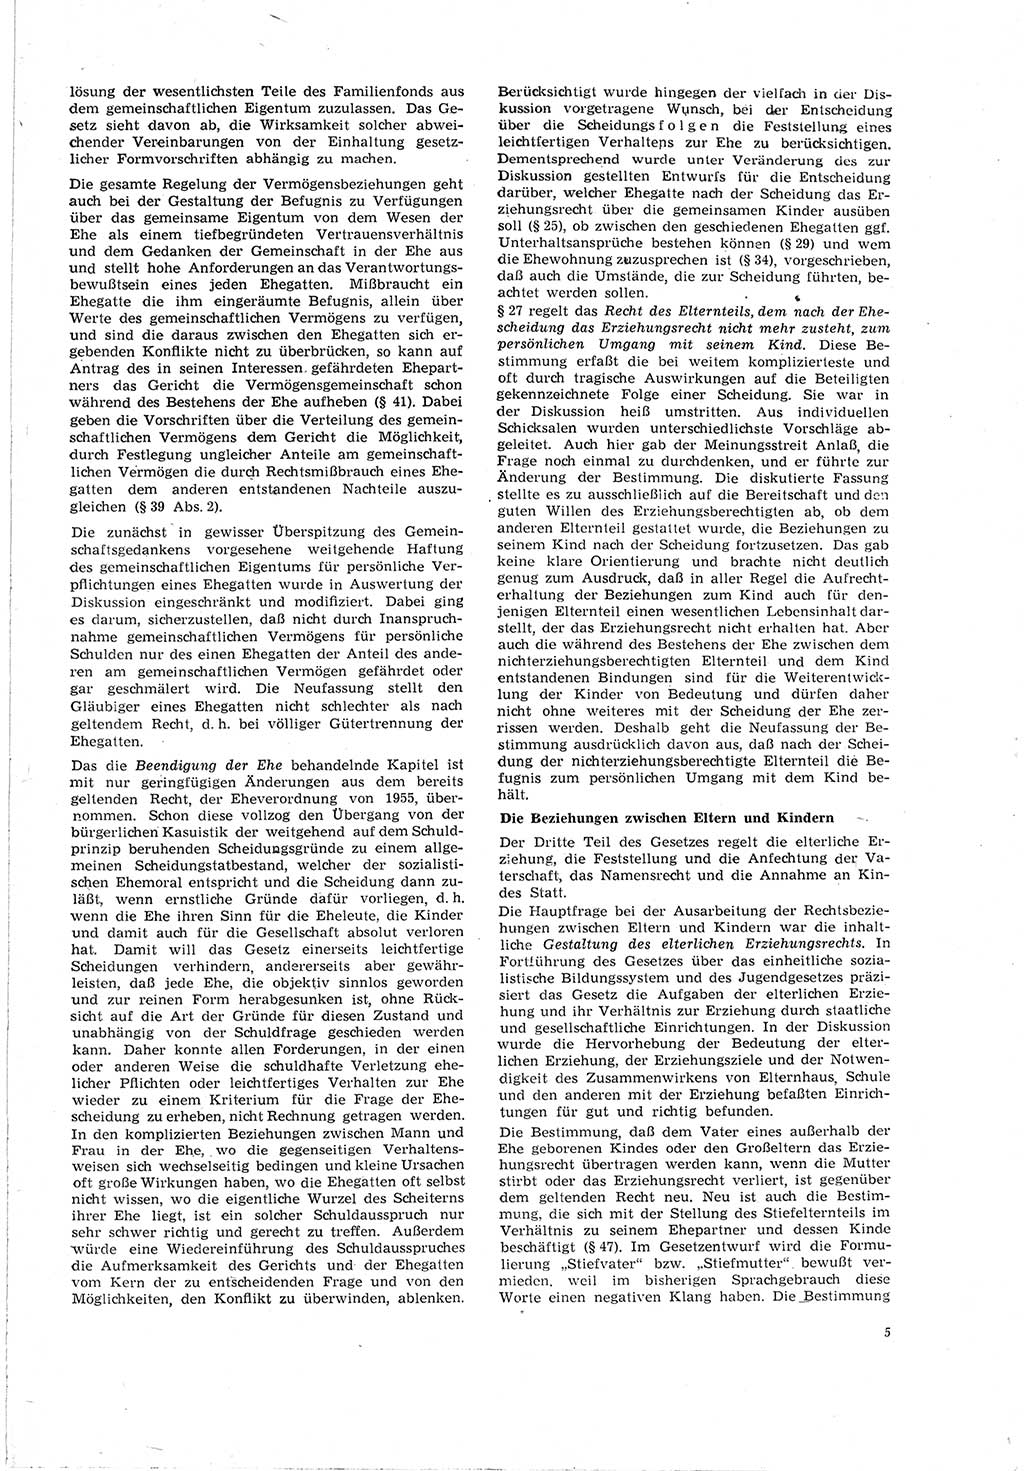 Neue Justiz (NJ), Zeitschrift für Recht und Rechtswissenschaft [Deutsche Demokratische Republik (DDR)], 20. Jahrgang 1966, Seite 5 (NJ DDR 1966, S. 5)